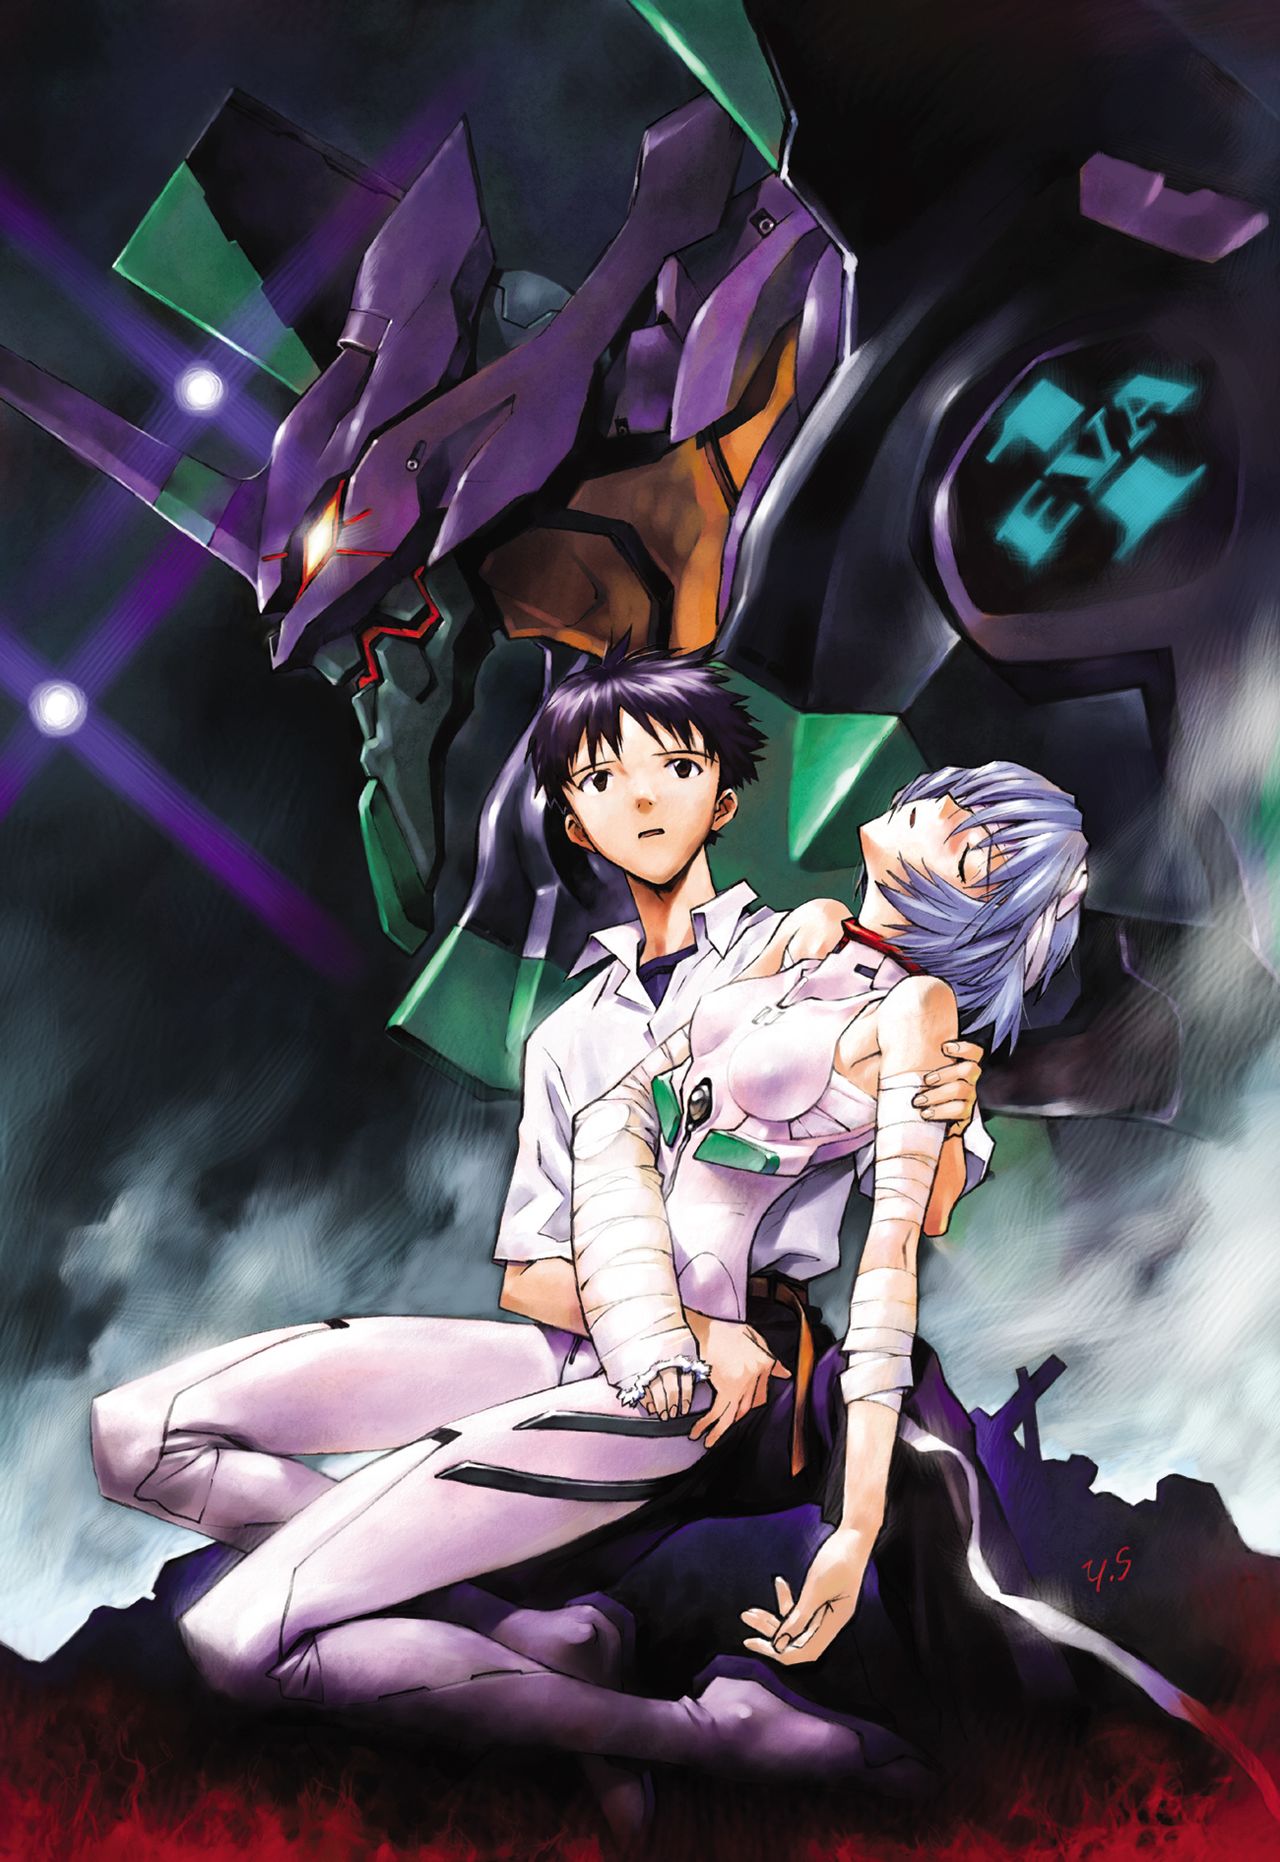 Ikari Shinji and Ayanami Rei, from Neon Genesis Evangelion. © khara, inc./Project Eva.